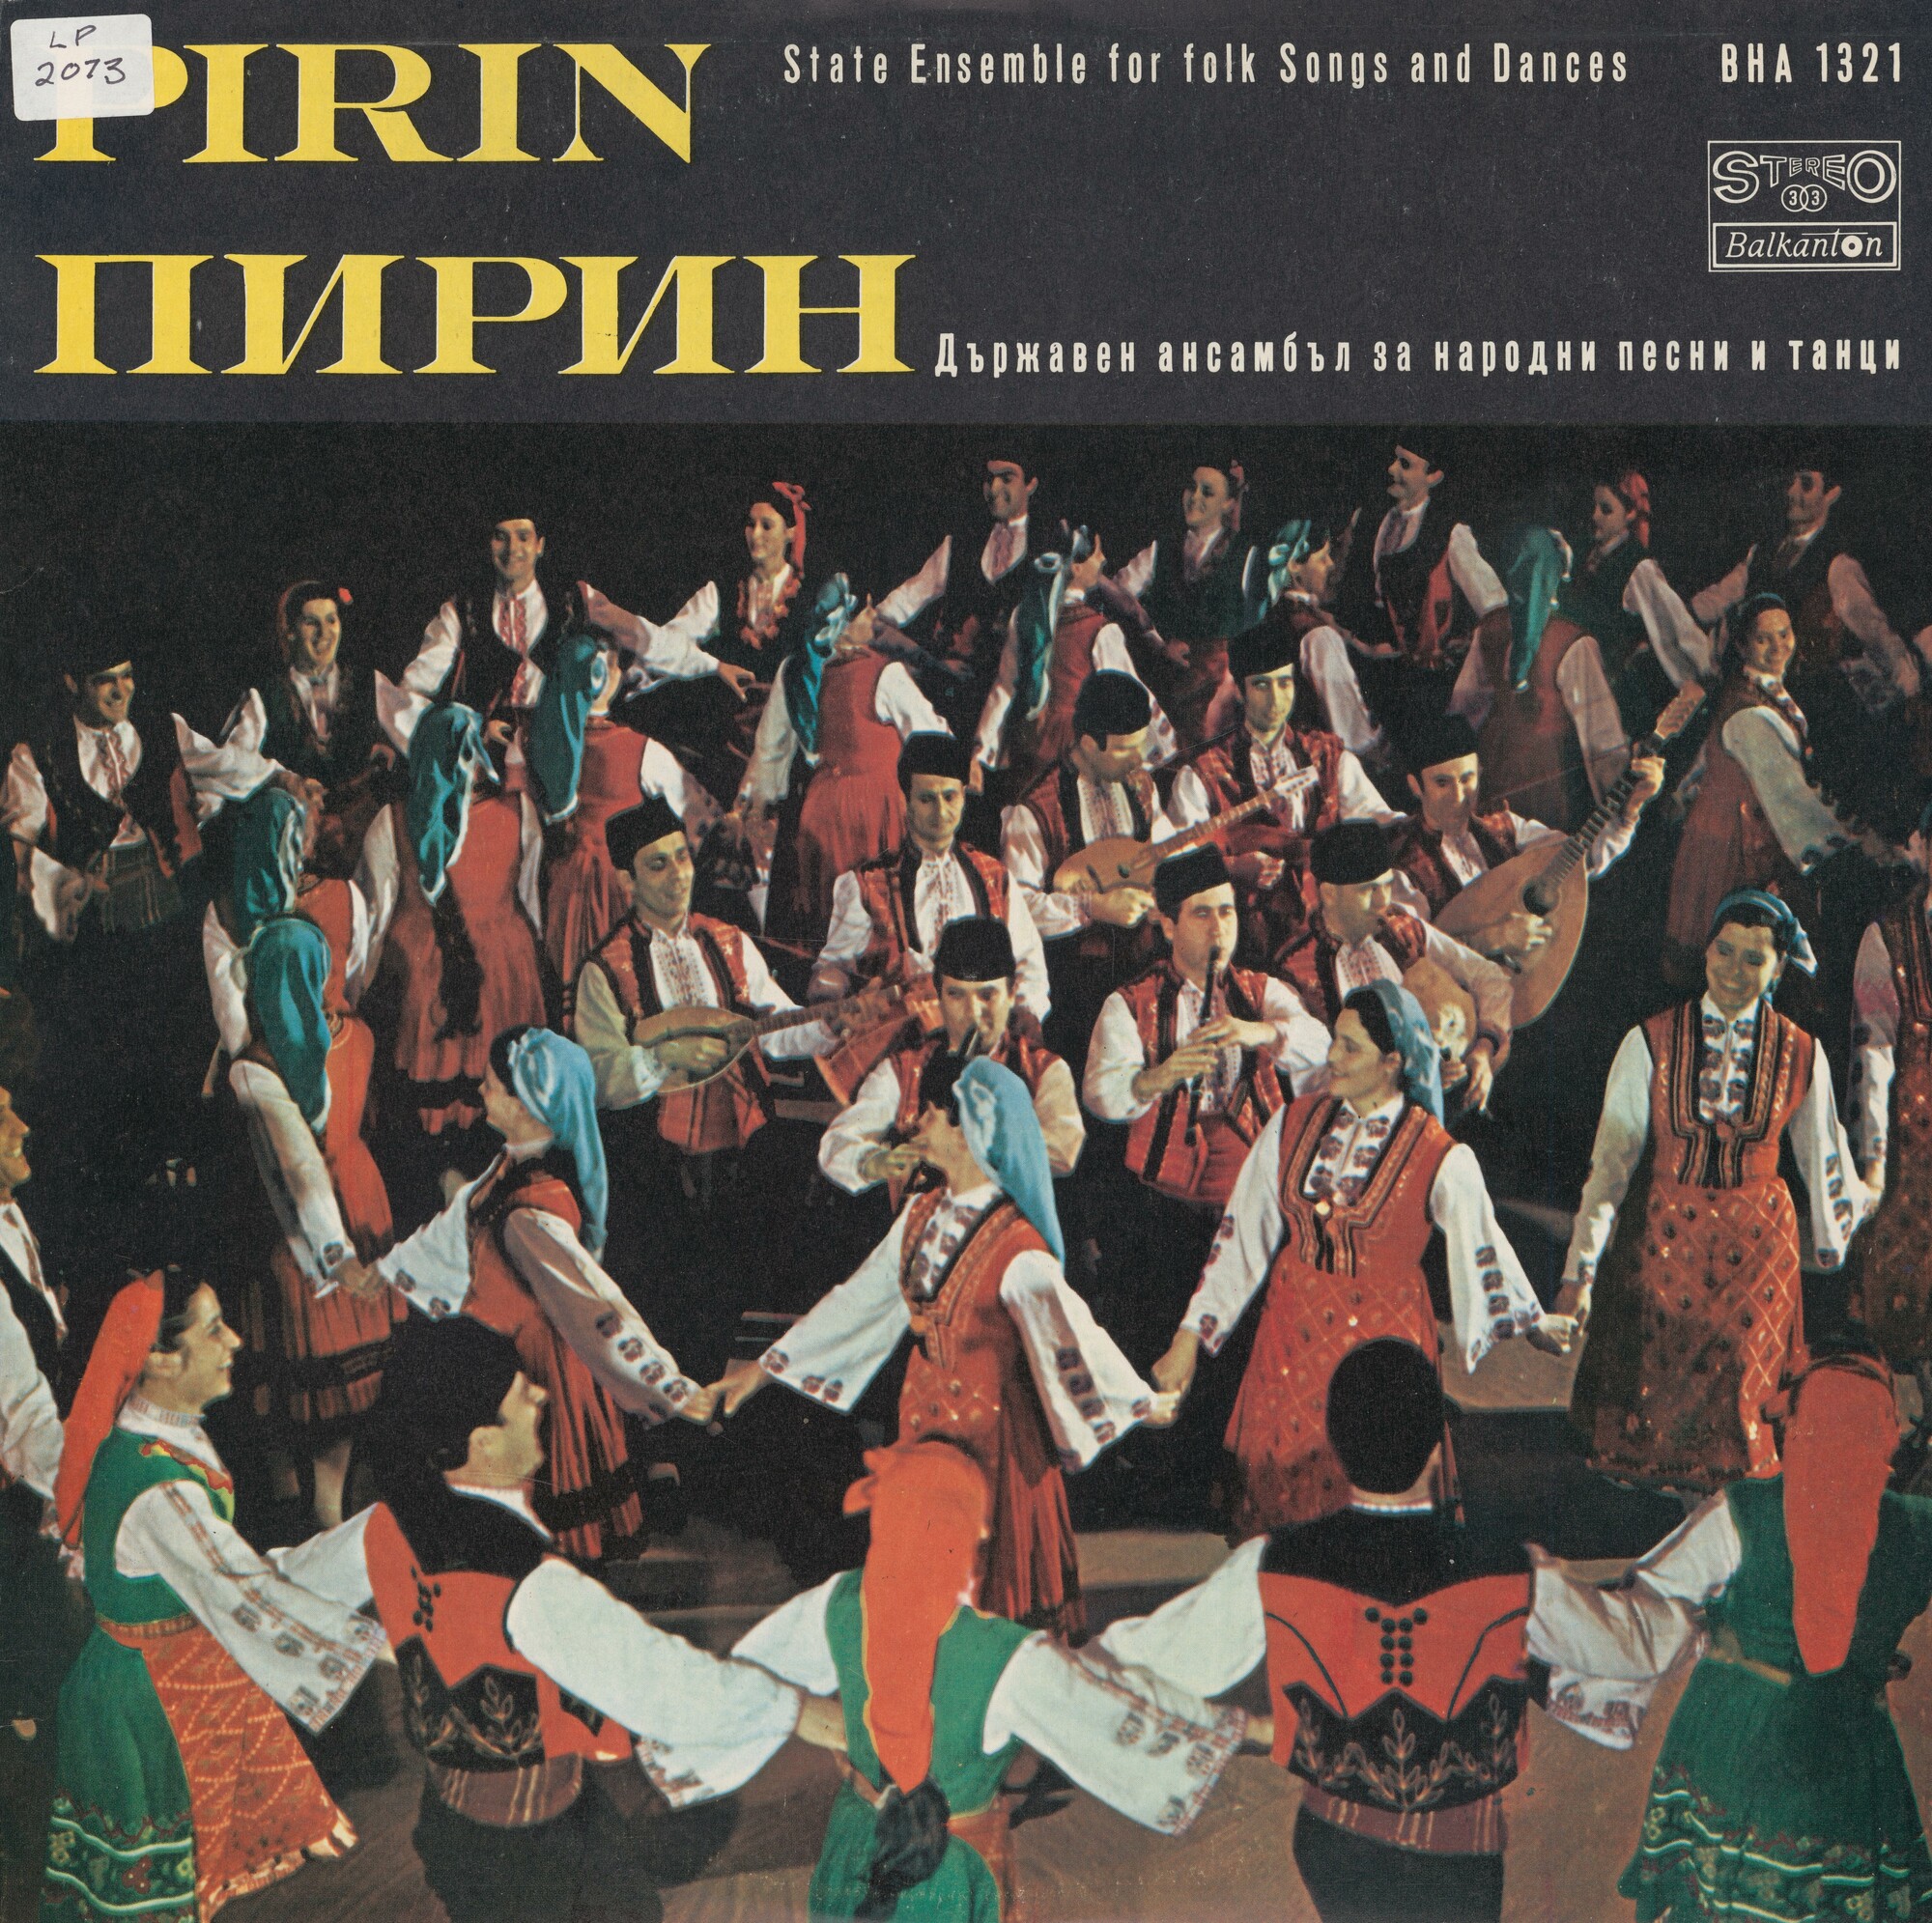 Държавен ансамбъл за народни песни и танци "Пирин" - Благоевград